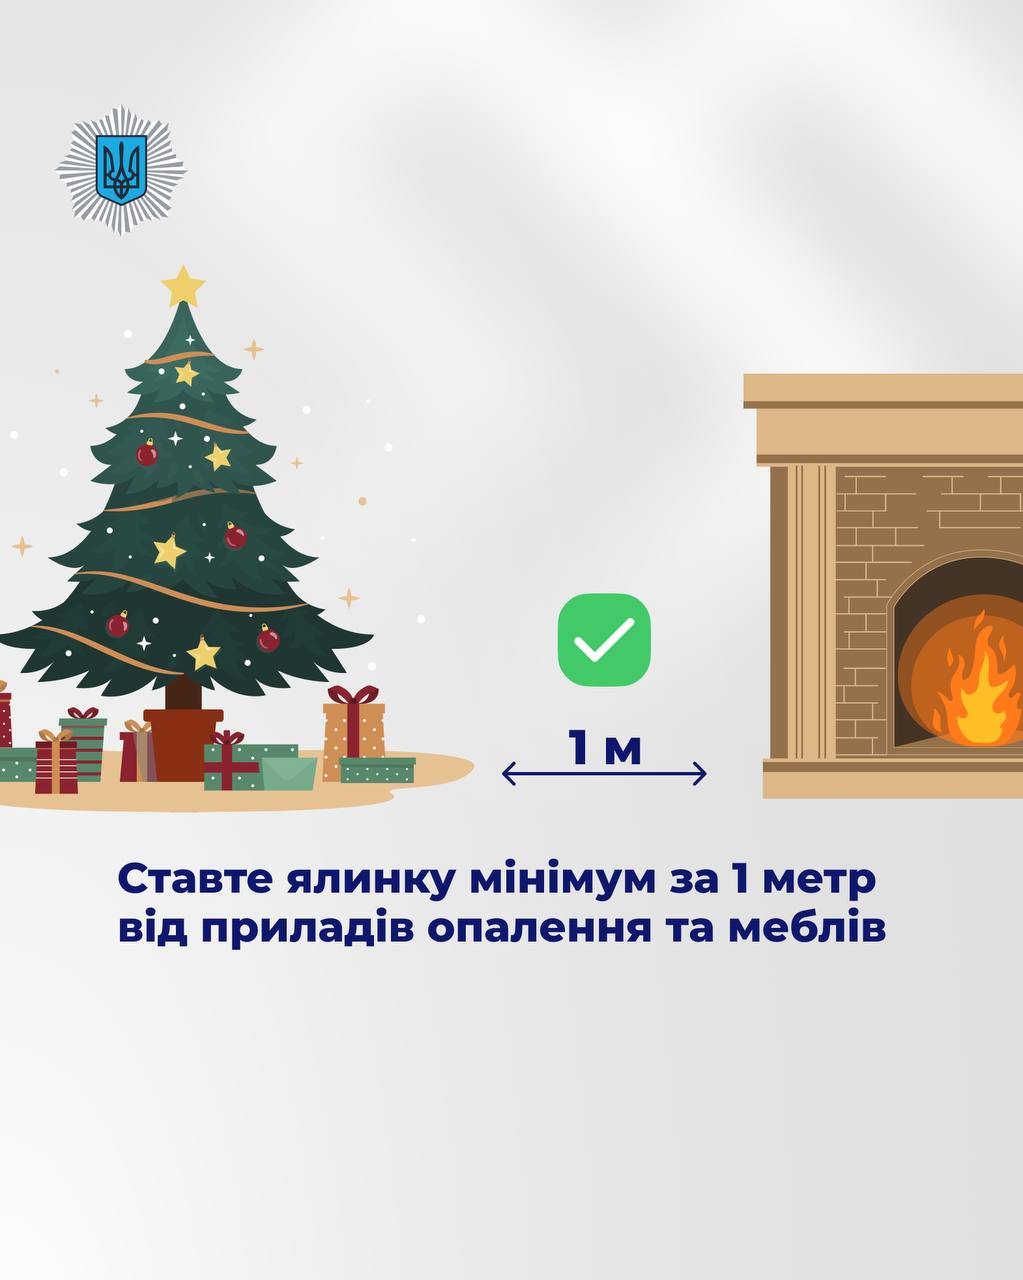 В Киеве с 4 января будут работать 44 пункта утилизации елок — фото